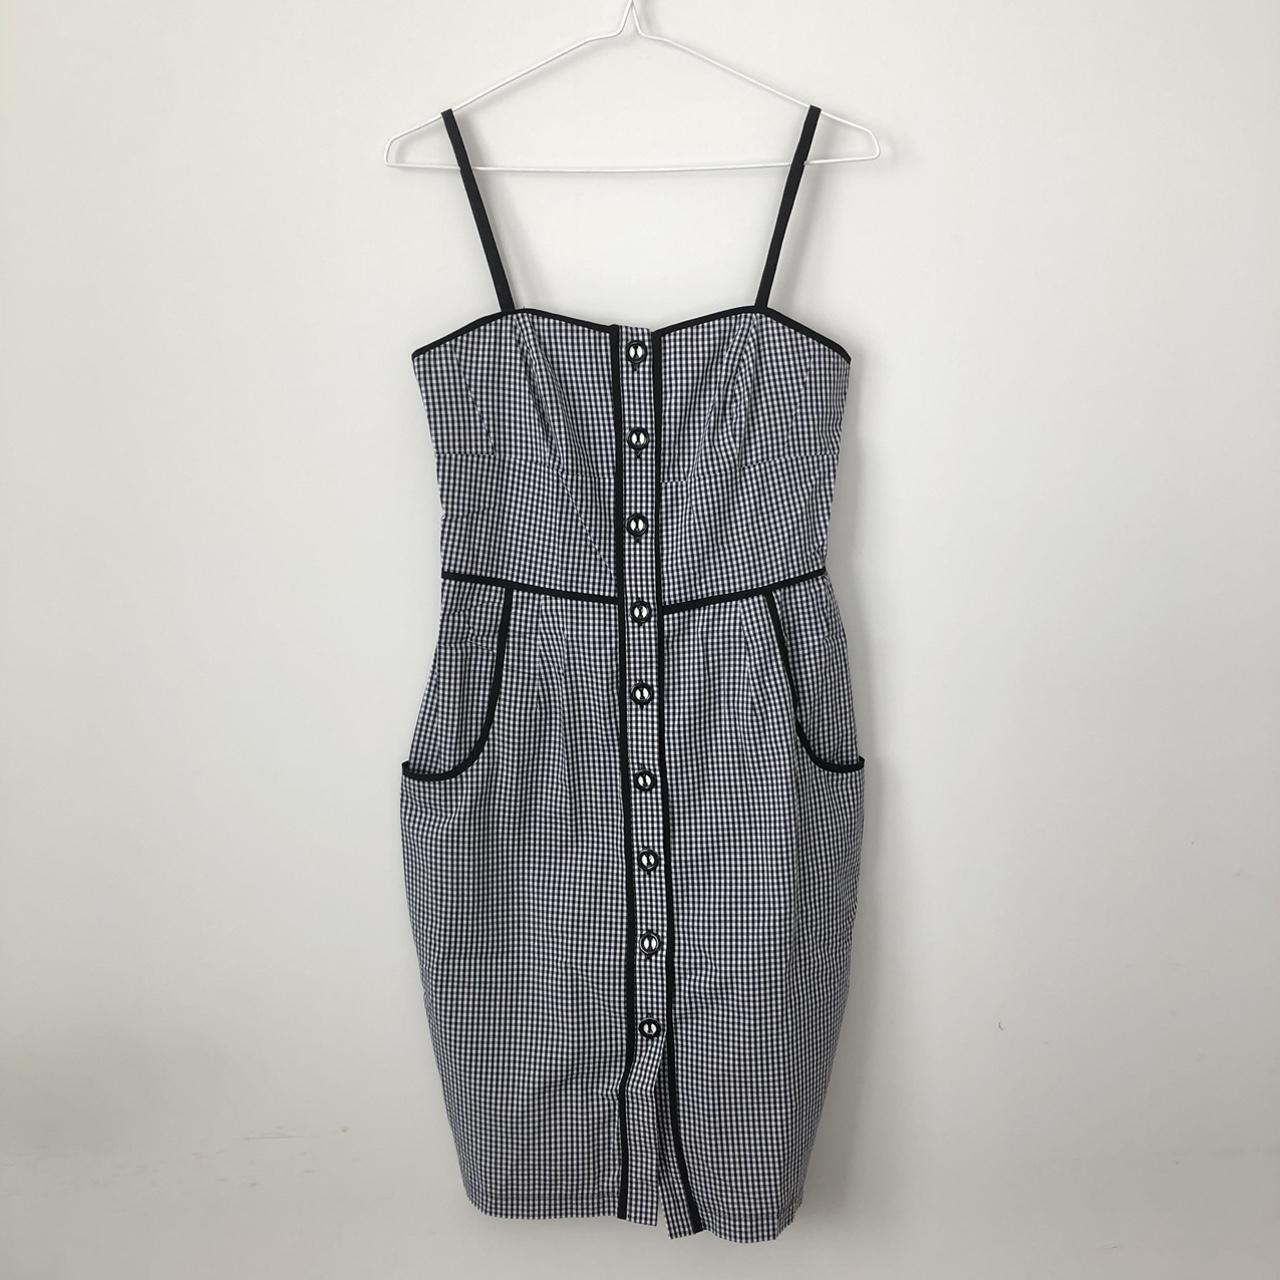 Shona Joy black and white button up dress. Size 8... - Depop